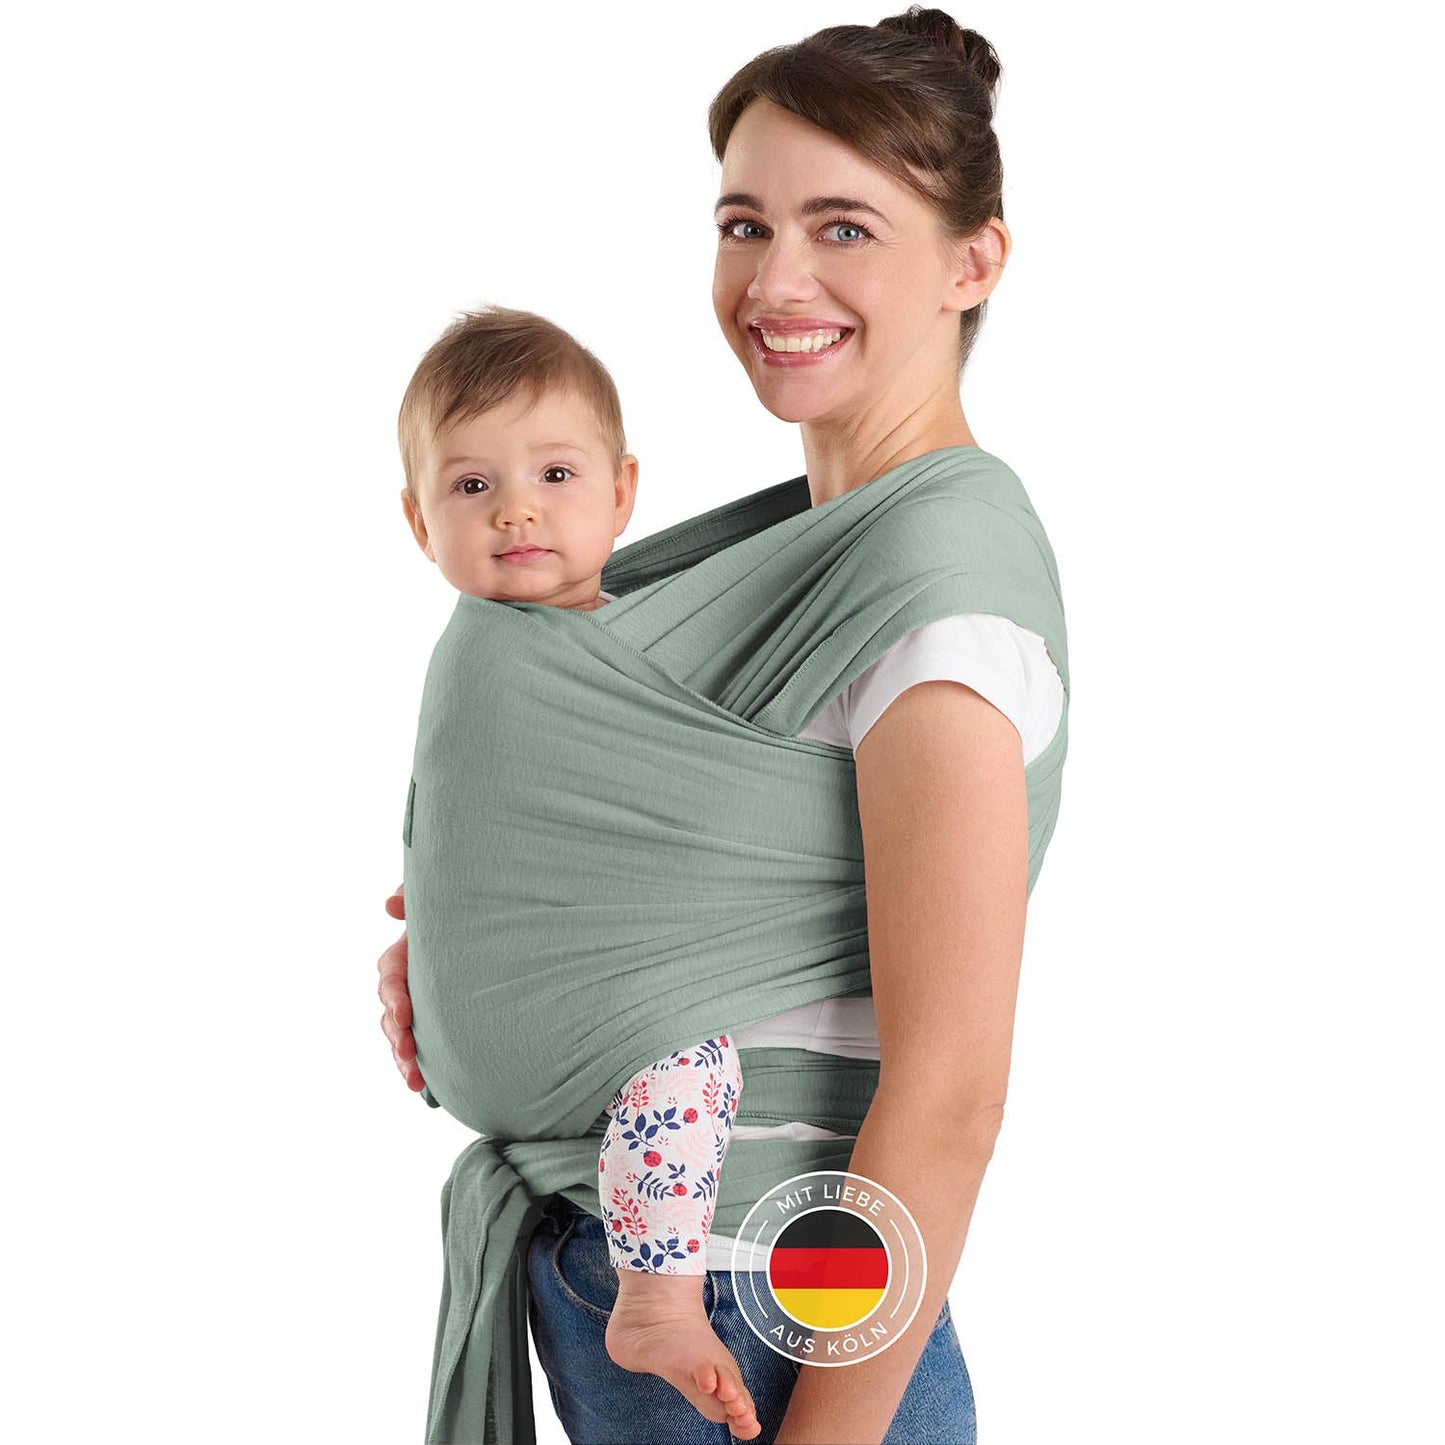 Frau mit Hochsteckfrisur trägt Baby in grüner Tragehilfe vor sich beide schauen zur Kamera.